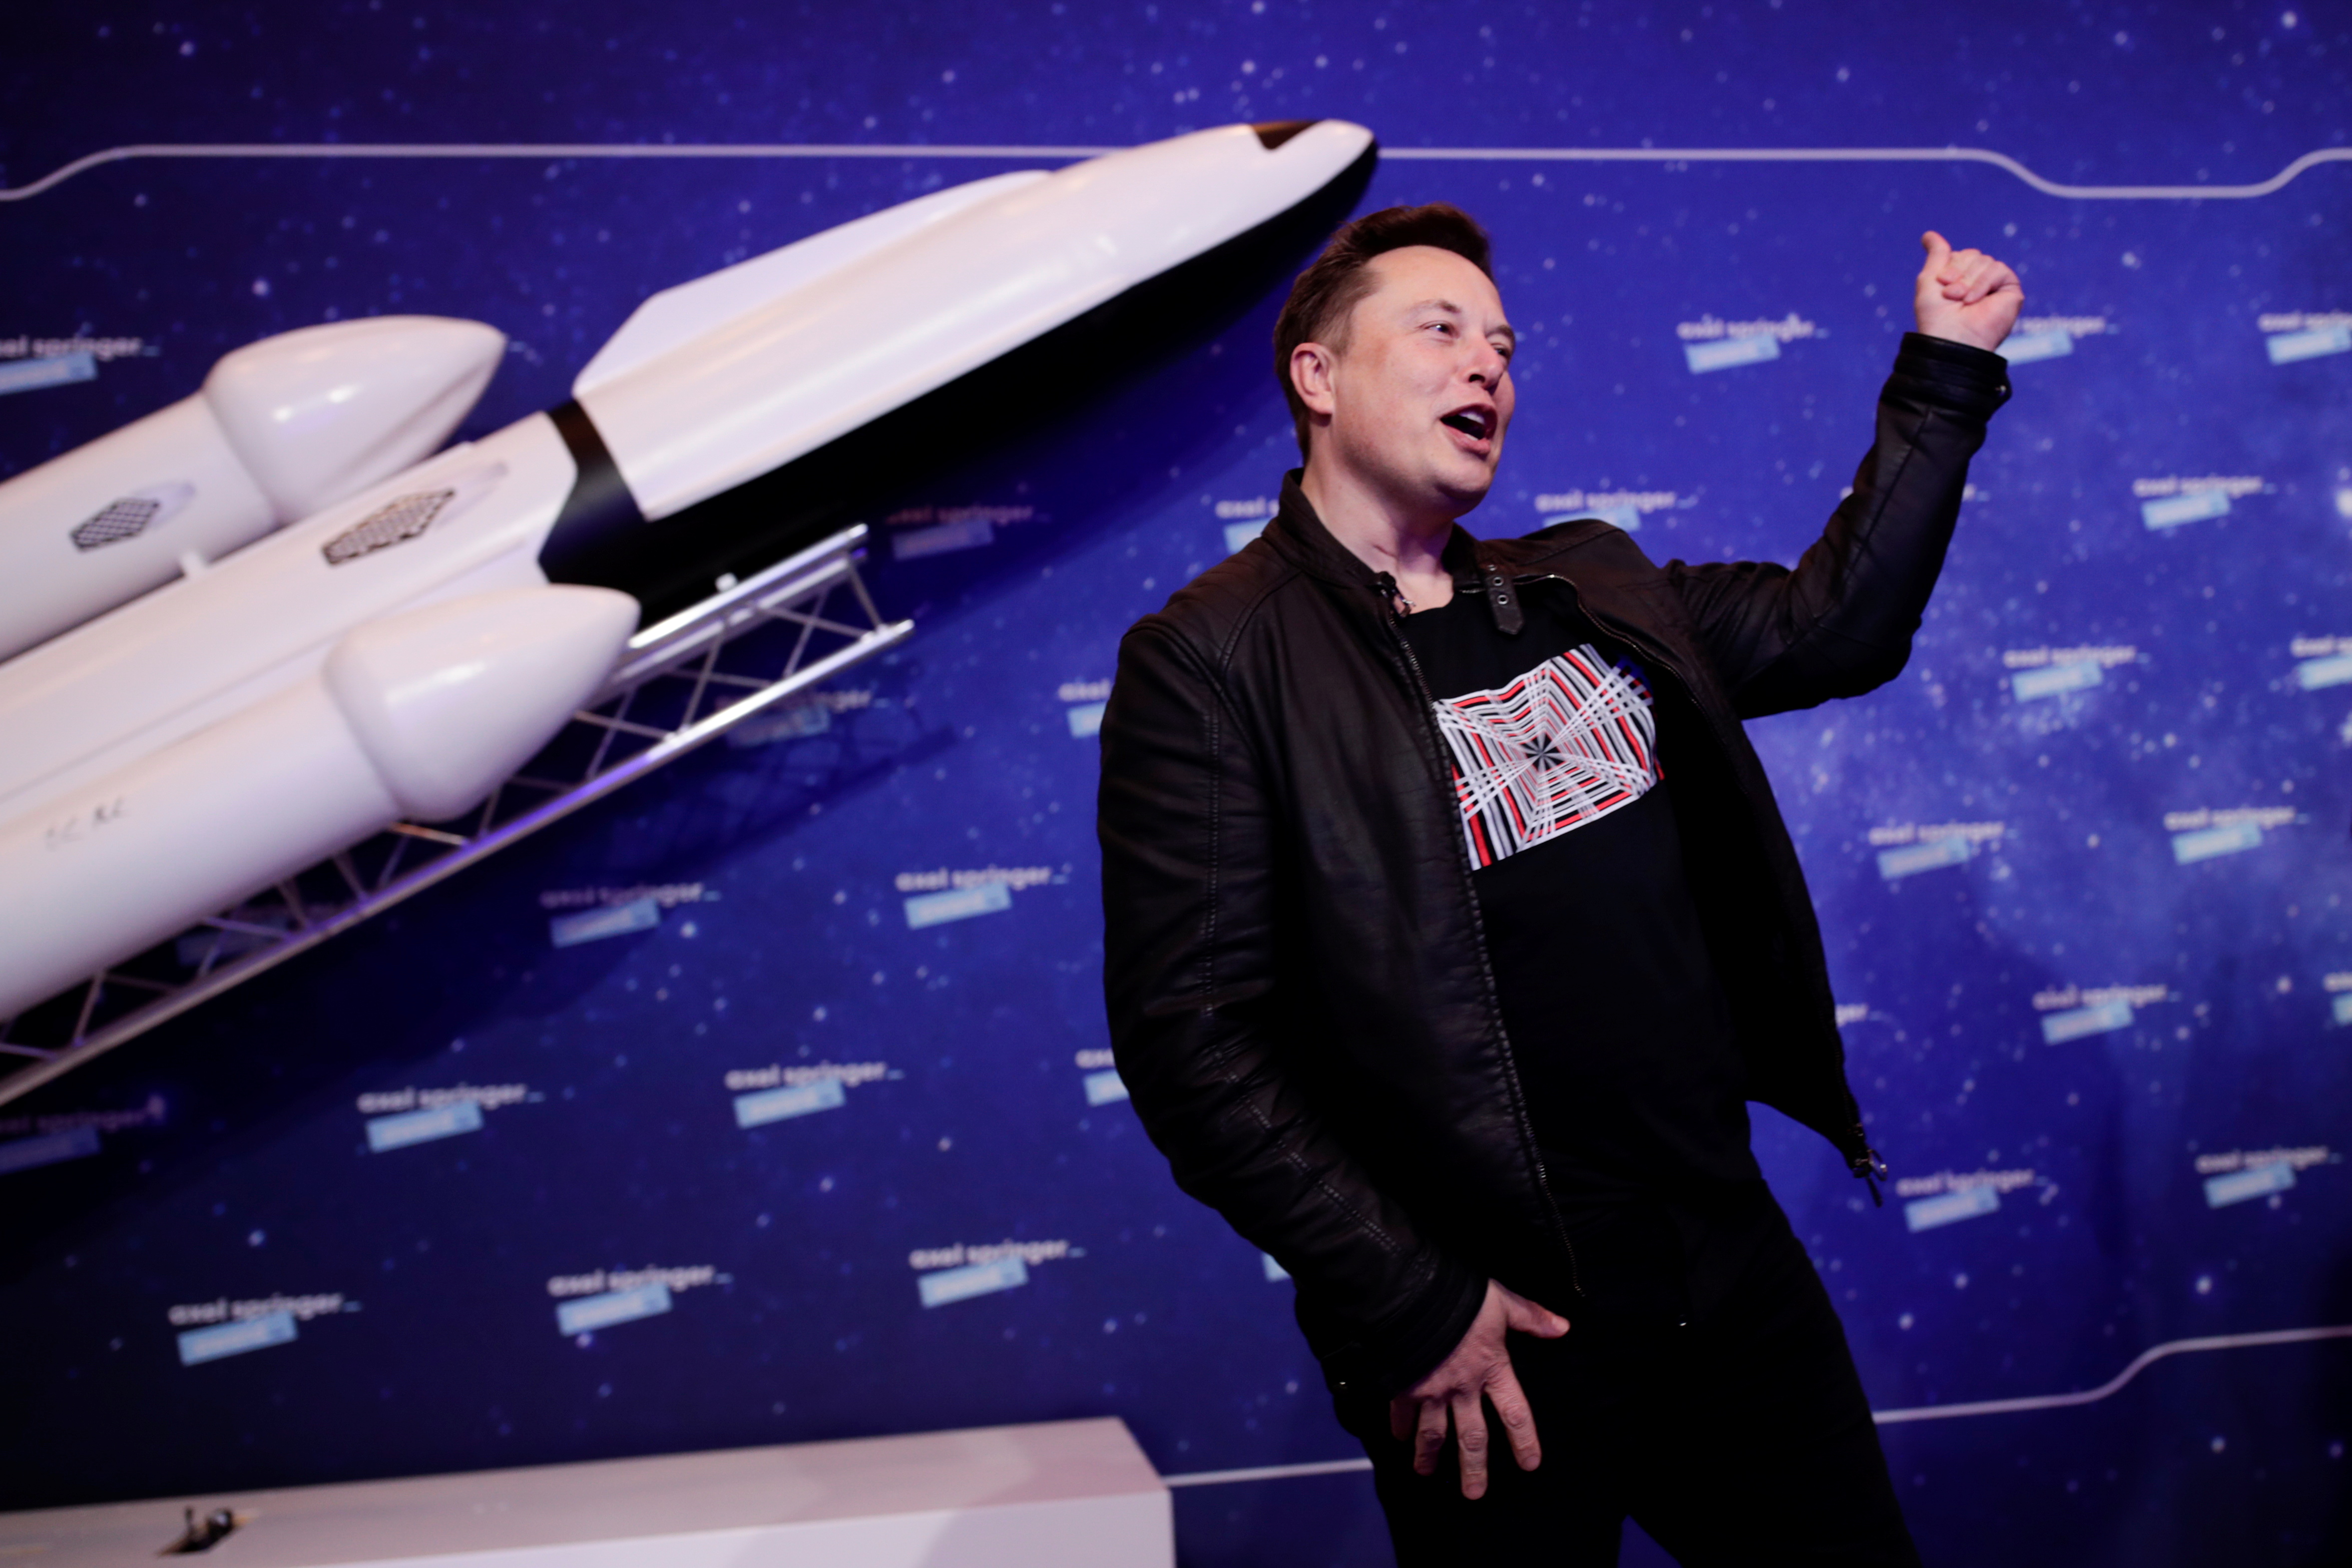 El fundador de SpaceX y Tesla imagina una suerte de democracia directa en Marte, en la que no se apliquen las leyes de la Tierra. (REUTERS/Hannibal Hanschke)